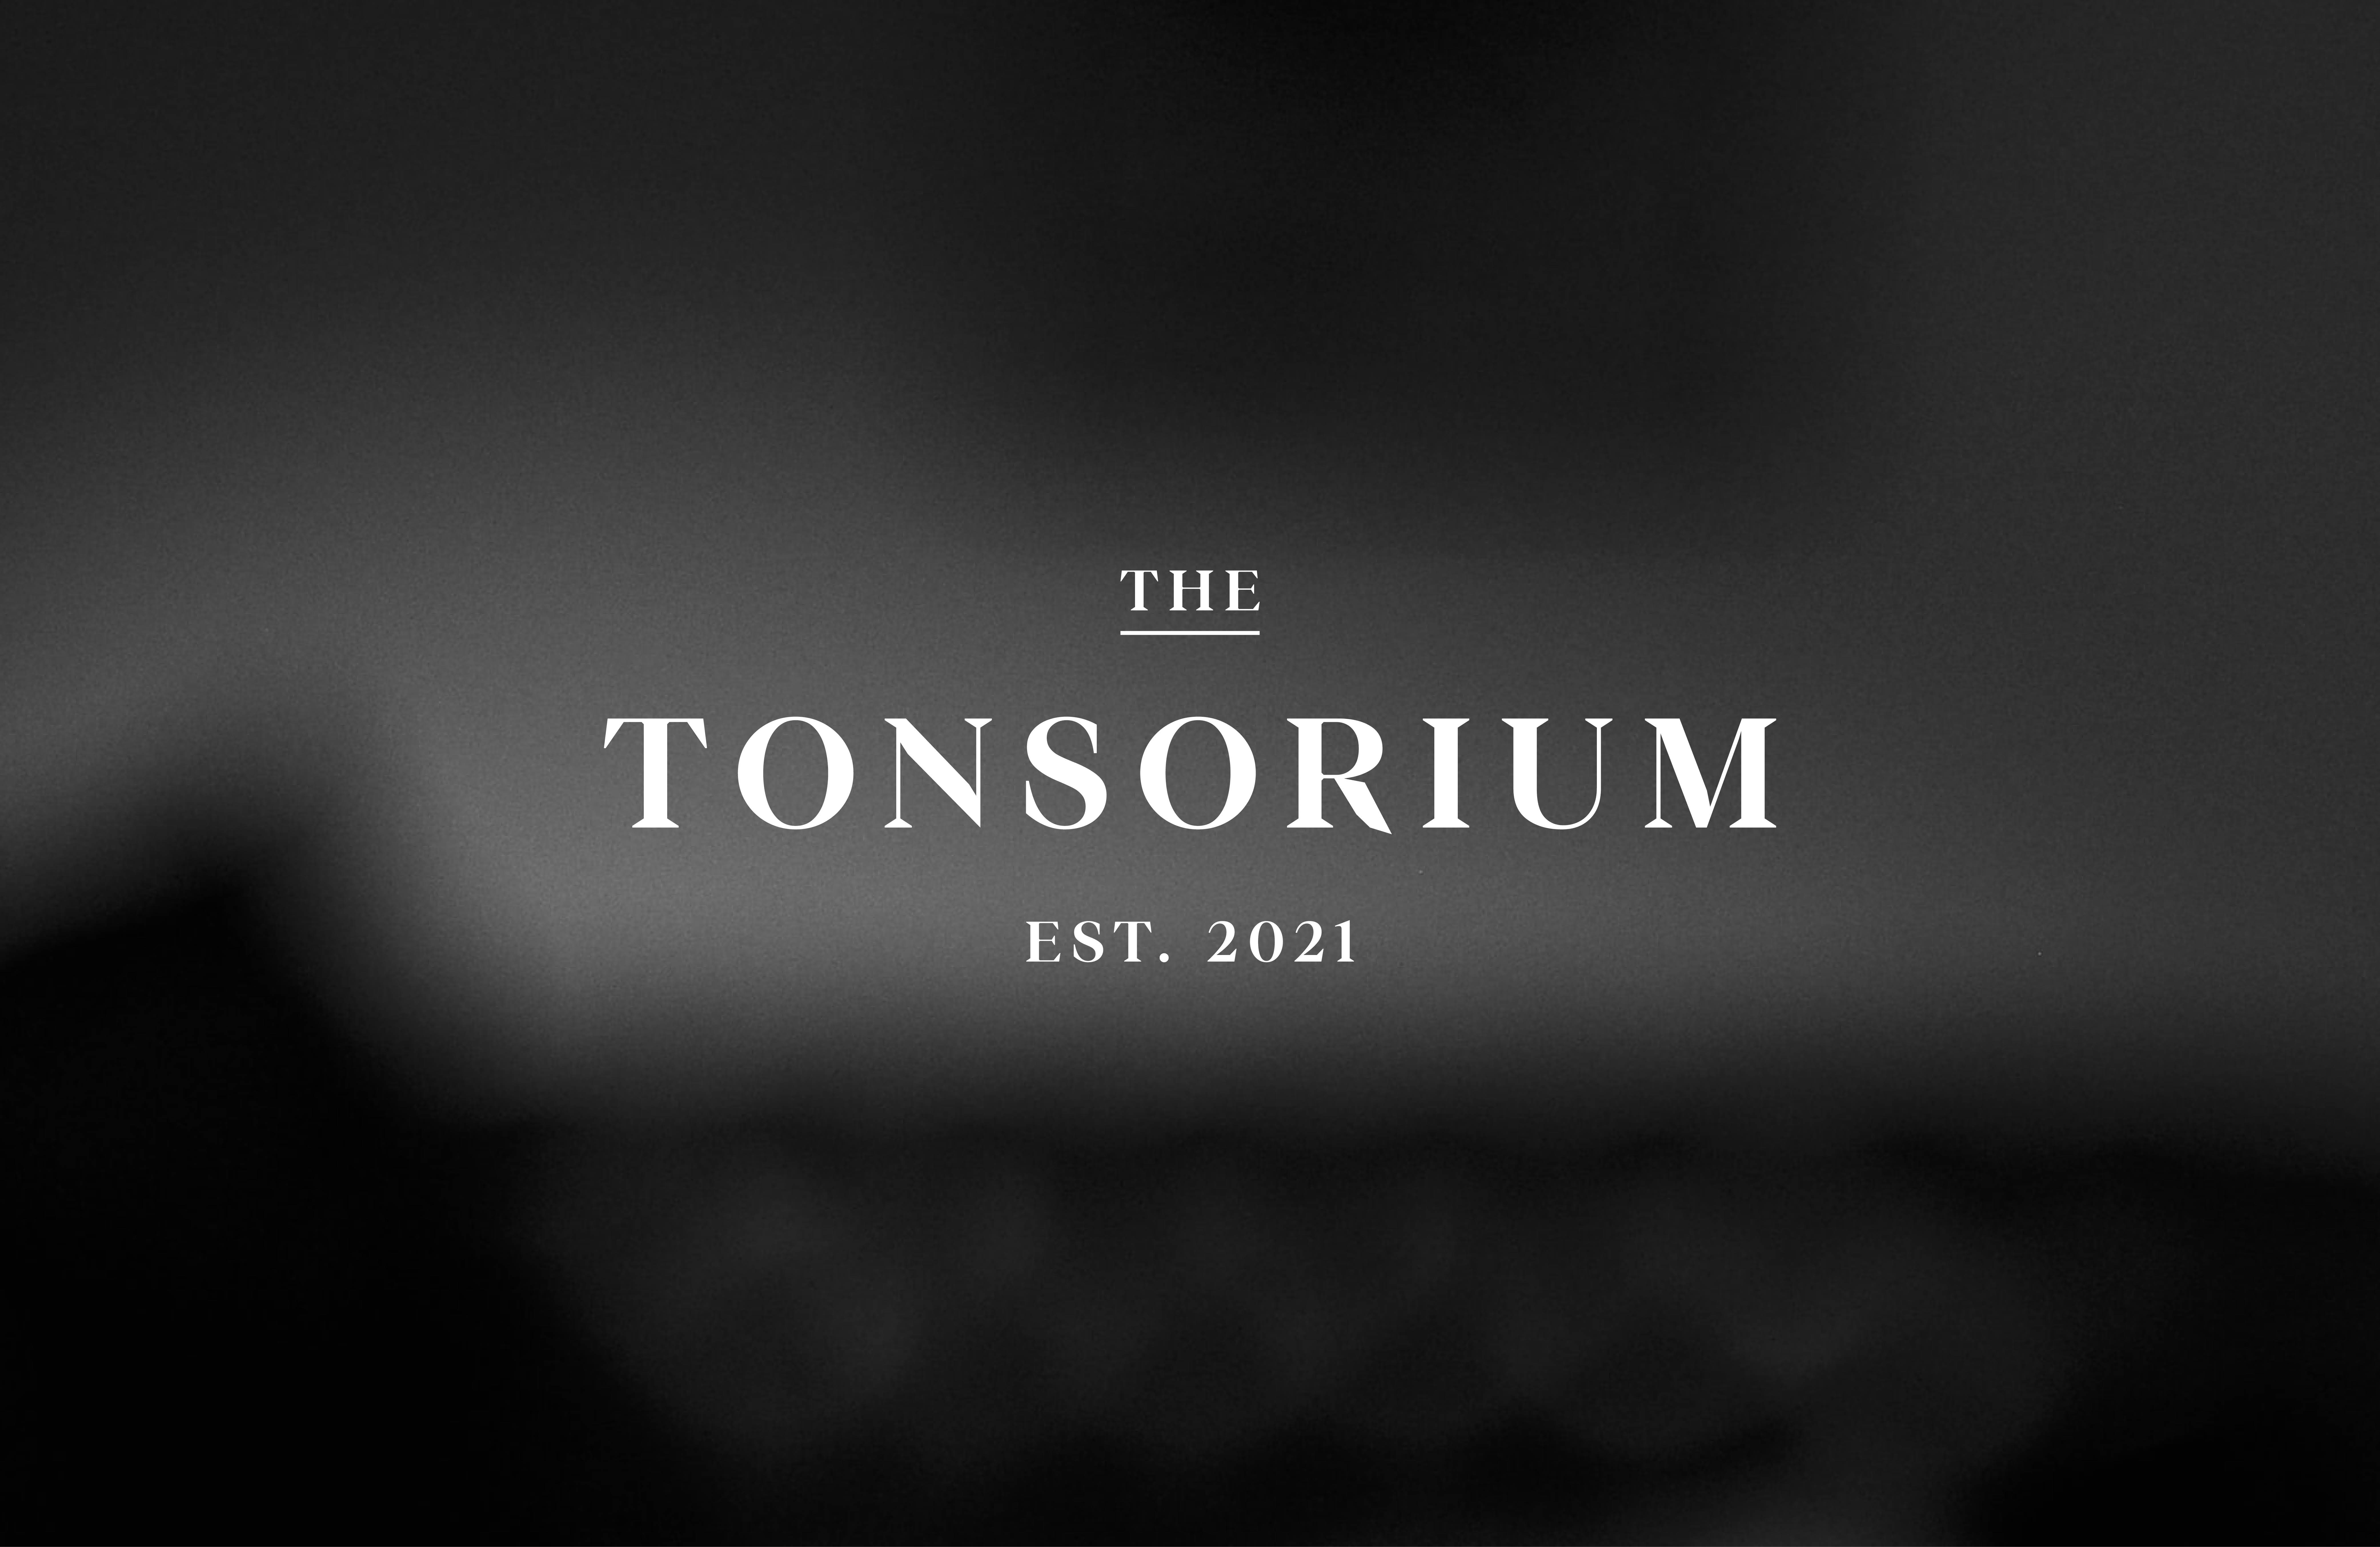 The Tonsorium